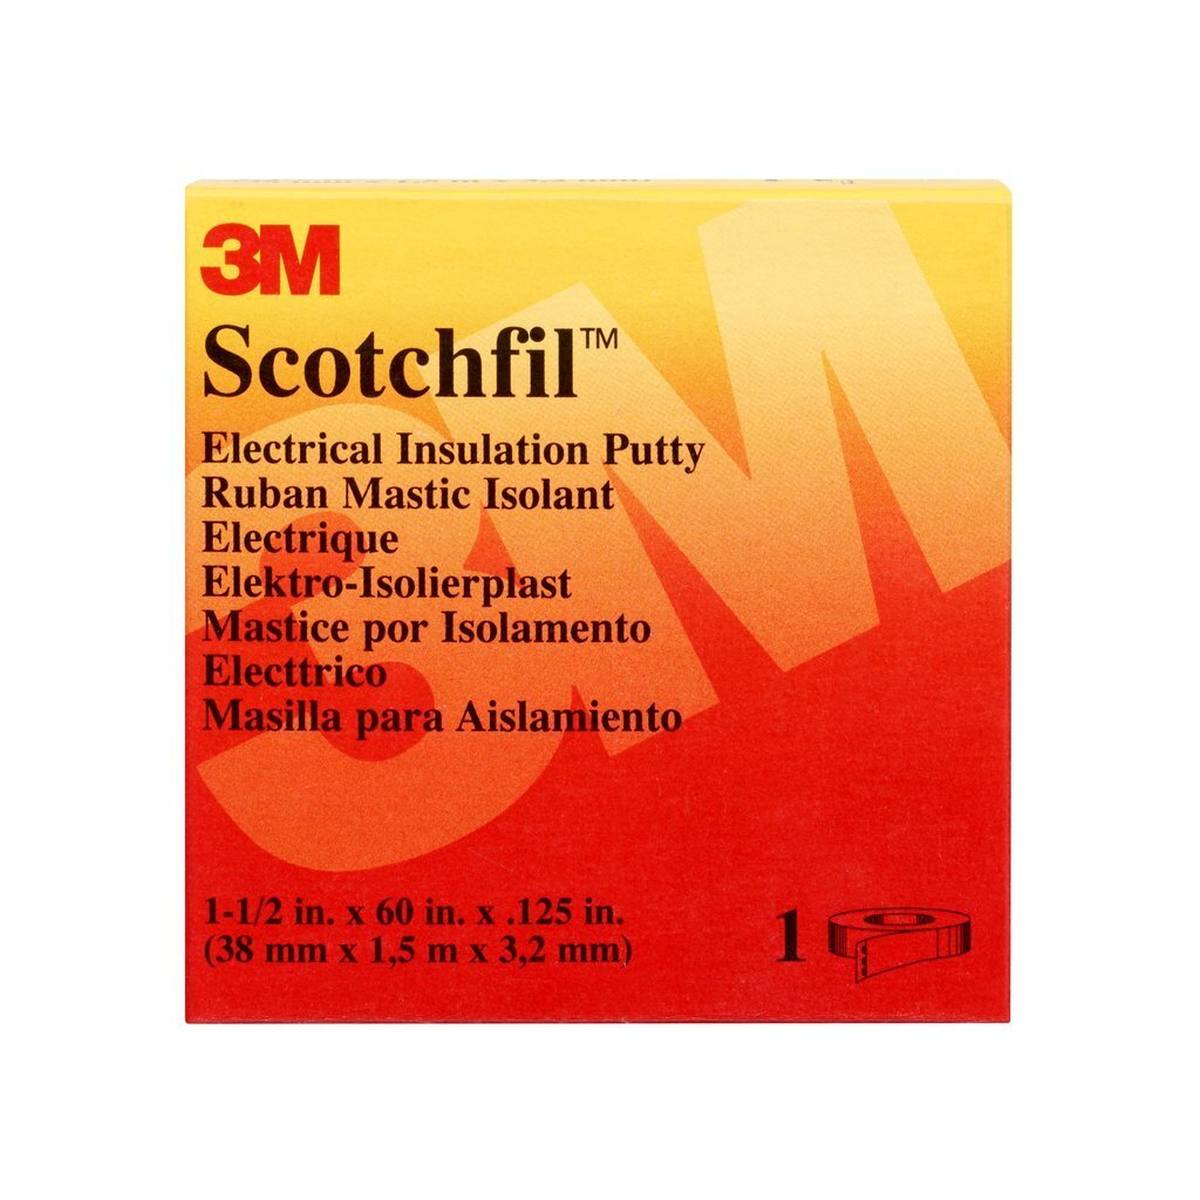  3M Scotchfil itsestään sulautuva butyylikumiteippi, musta, 38 mm x 1,5 m, 3 mm